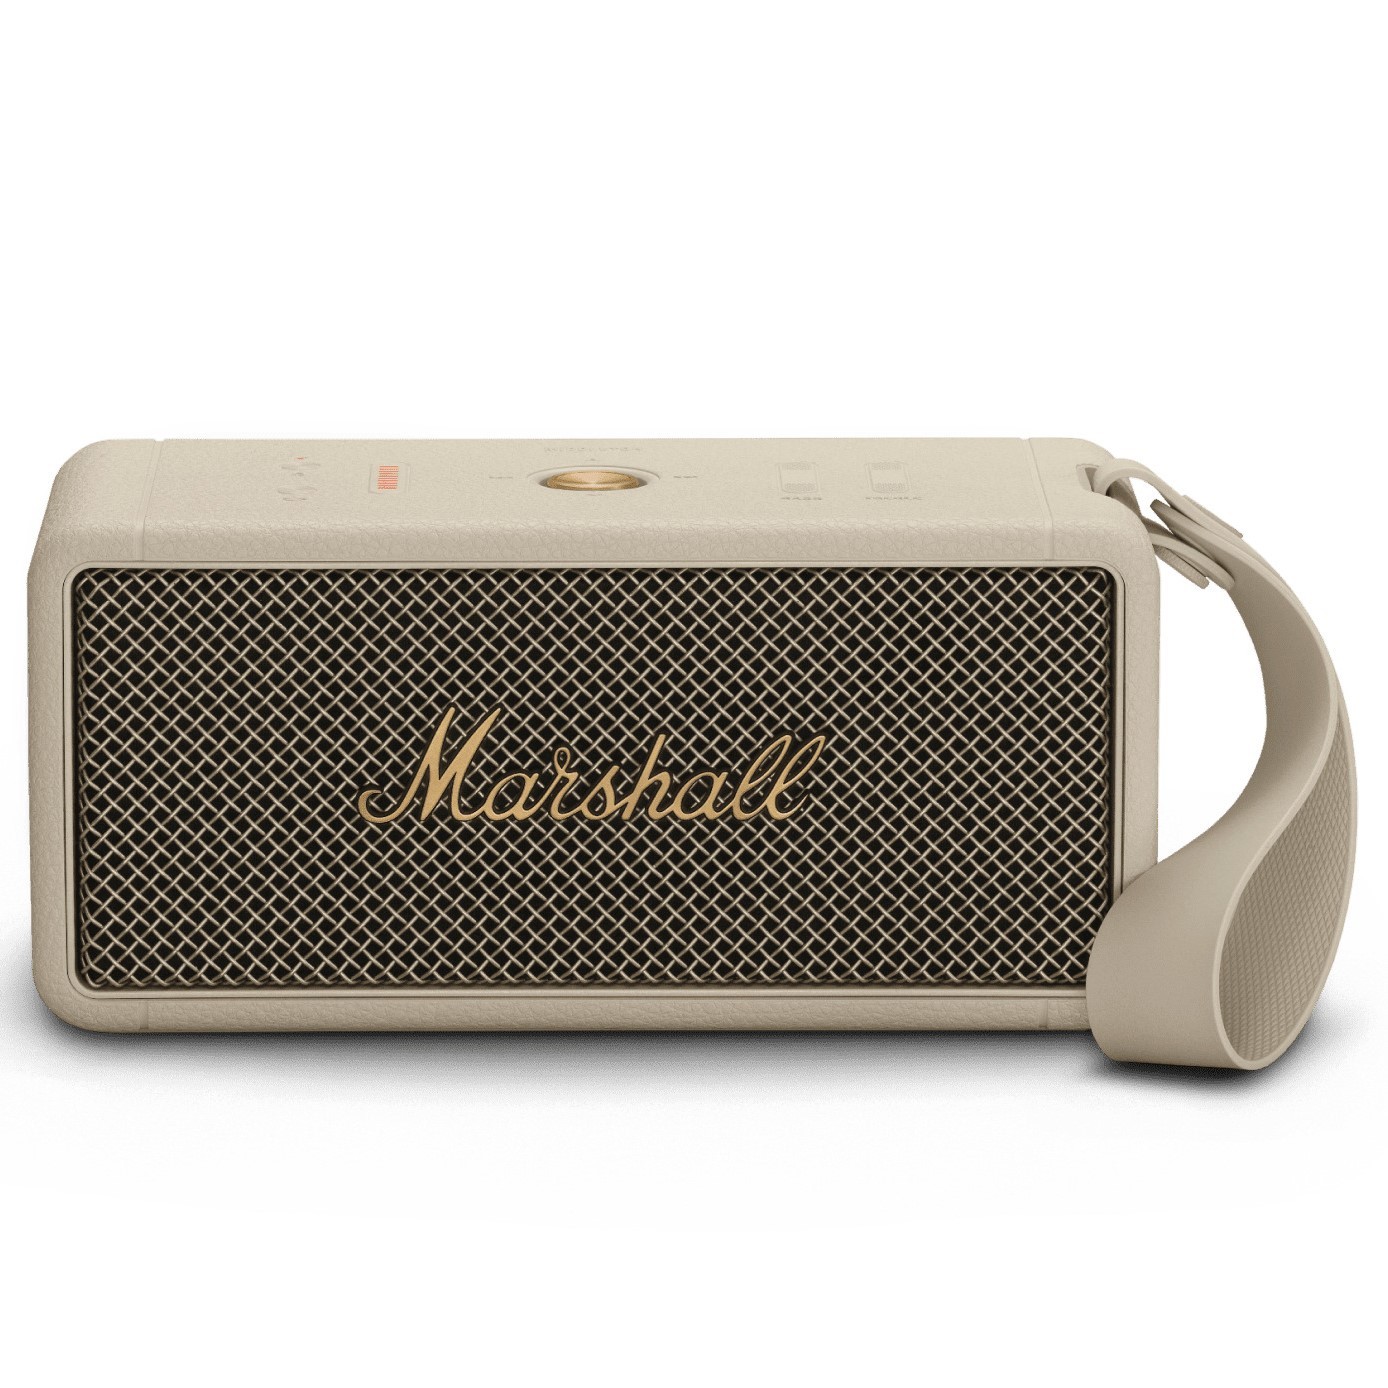 Marshall MIDDLETON Bluetooth Speaker - Cream